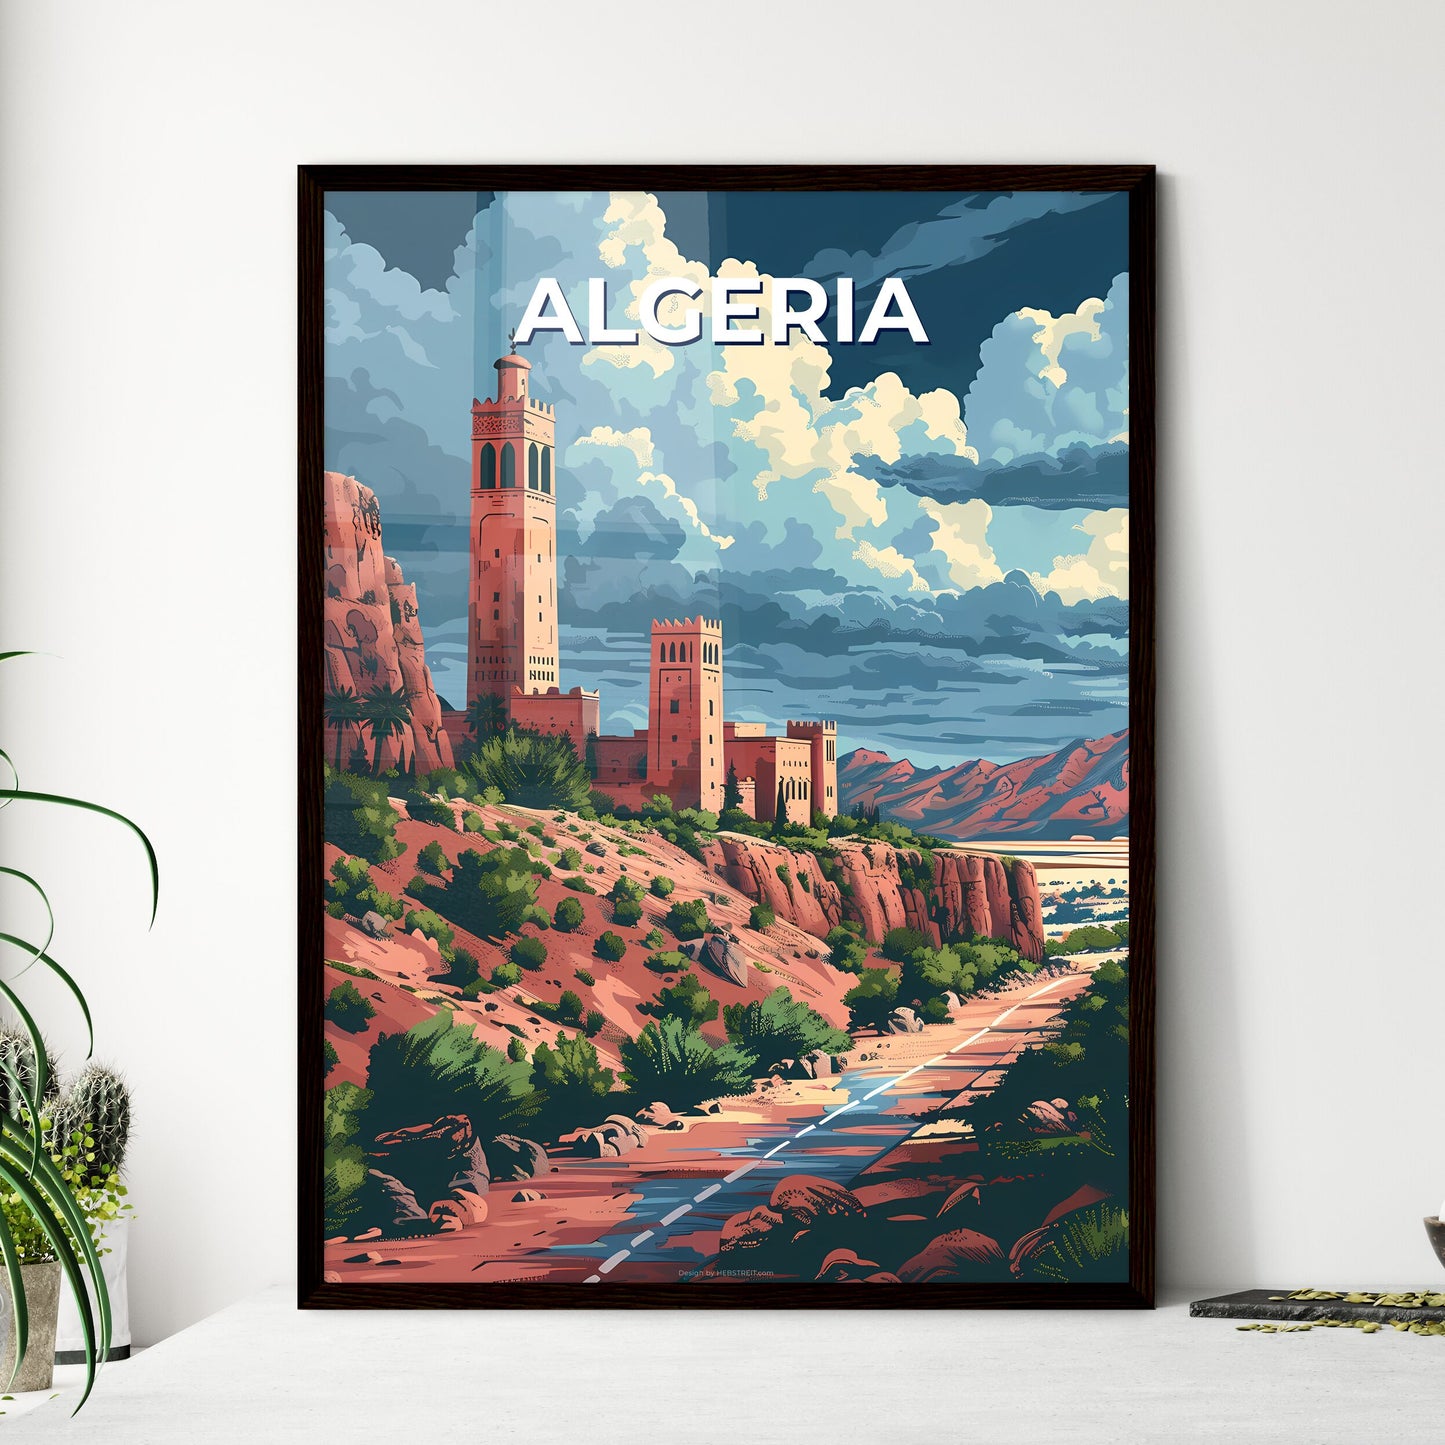 Art, Algeria, Africa, Castle, Landscape, Painting, Photography, Hill, Historical, Architecture, Castle on a Hill, Algerian Art, Algerian Landscape